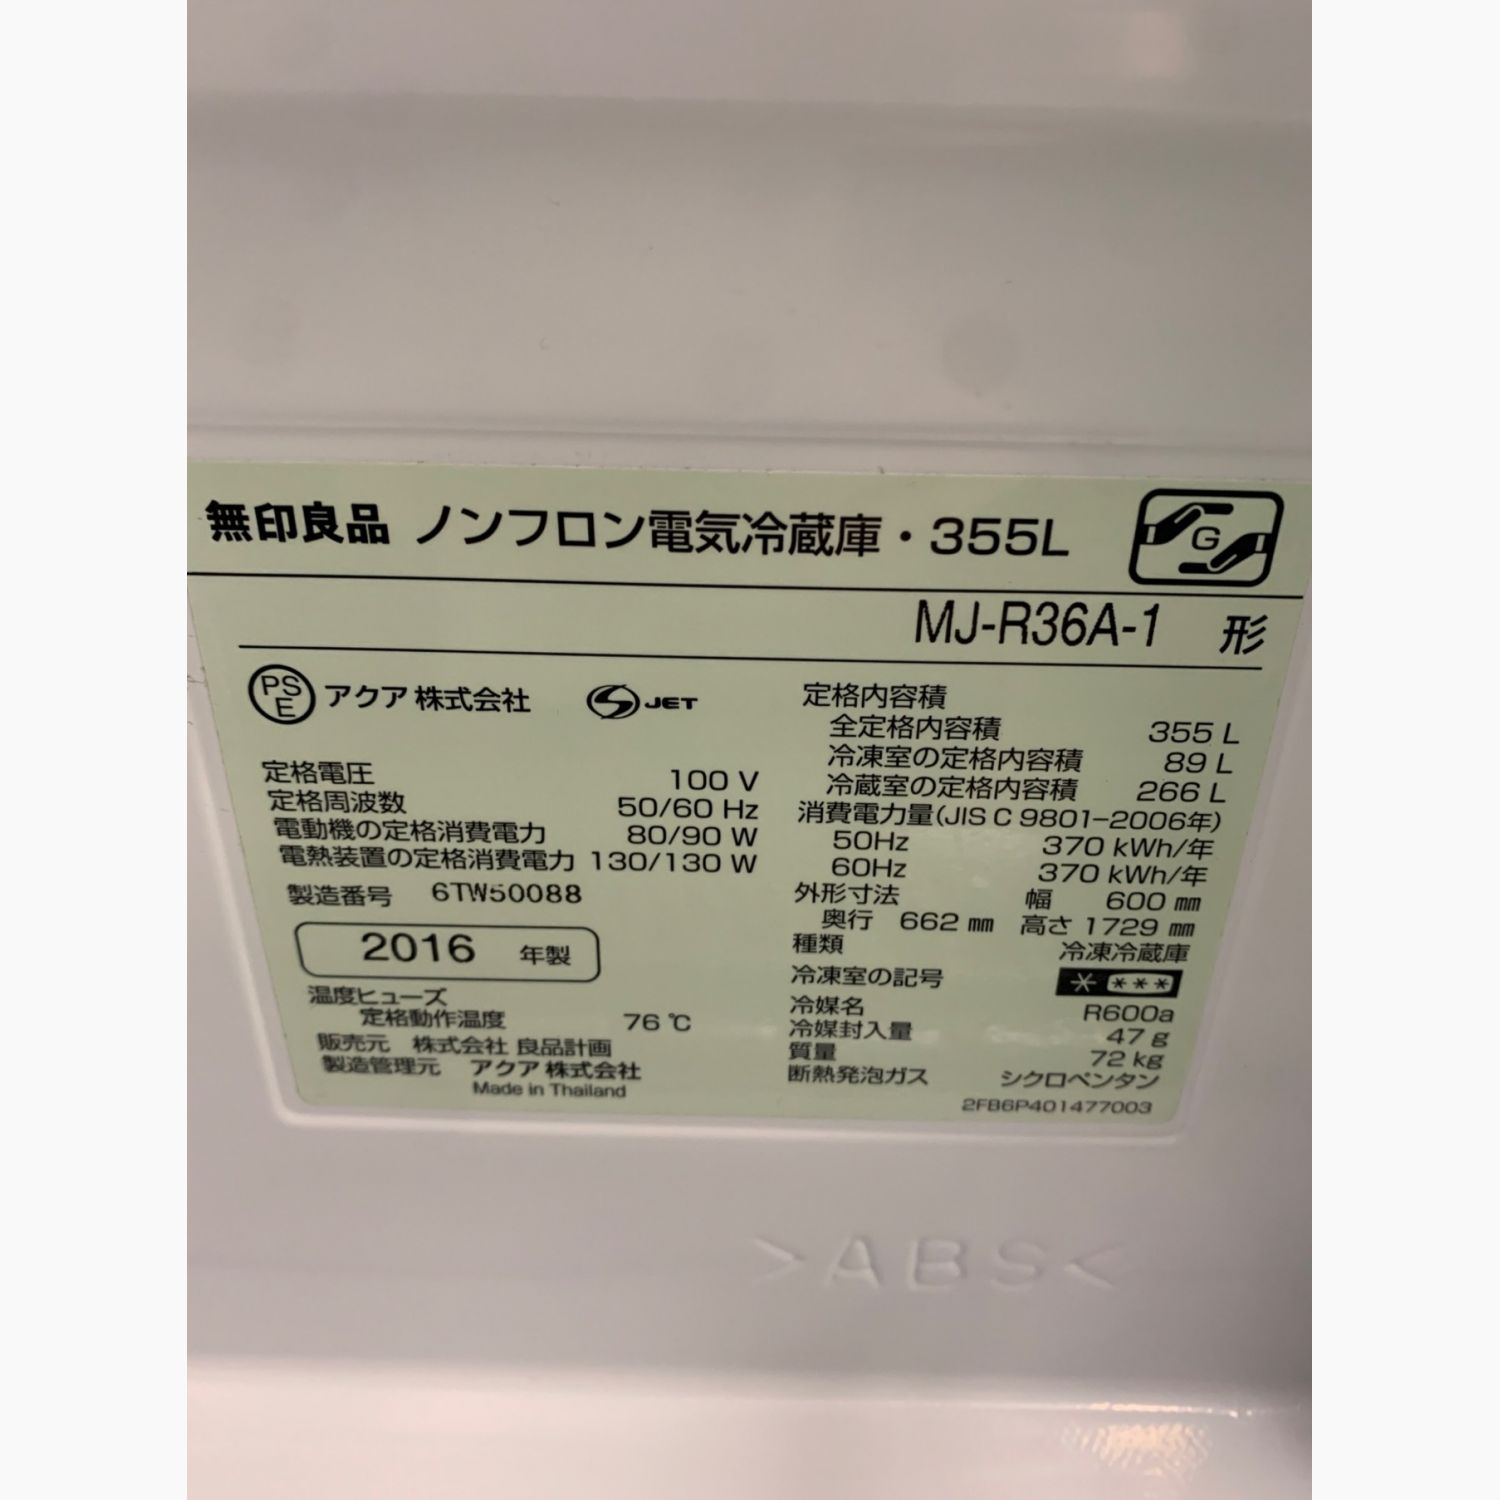 無印良品 (ムジルシリョウヒン) 4ドア冷蔵庫 MJ-R36A-1 2016年製